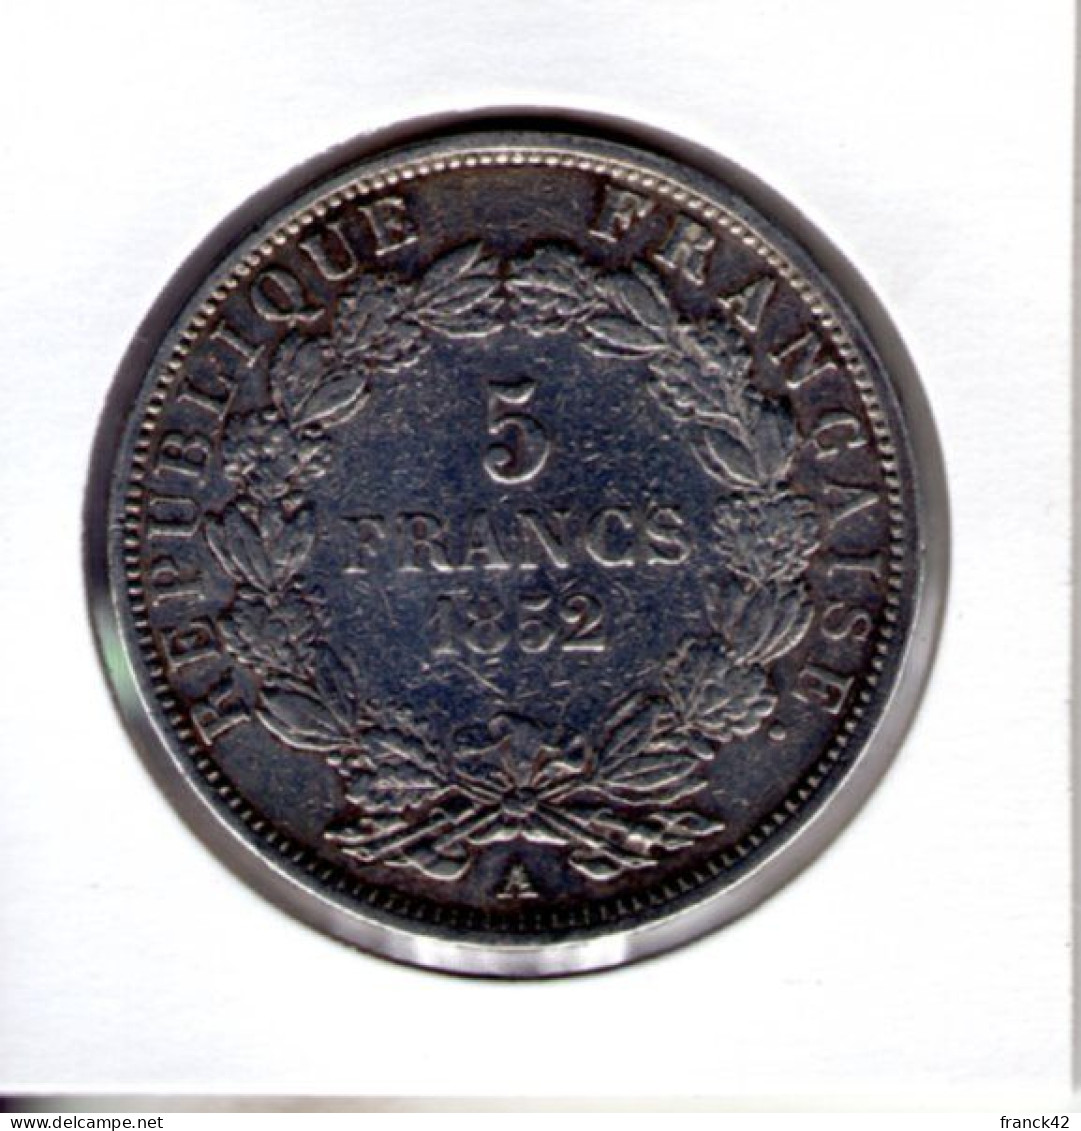 France. Louis Napoléon Bonaparte. 5 Francs. 1852 A - 5 Francs